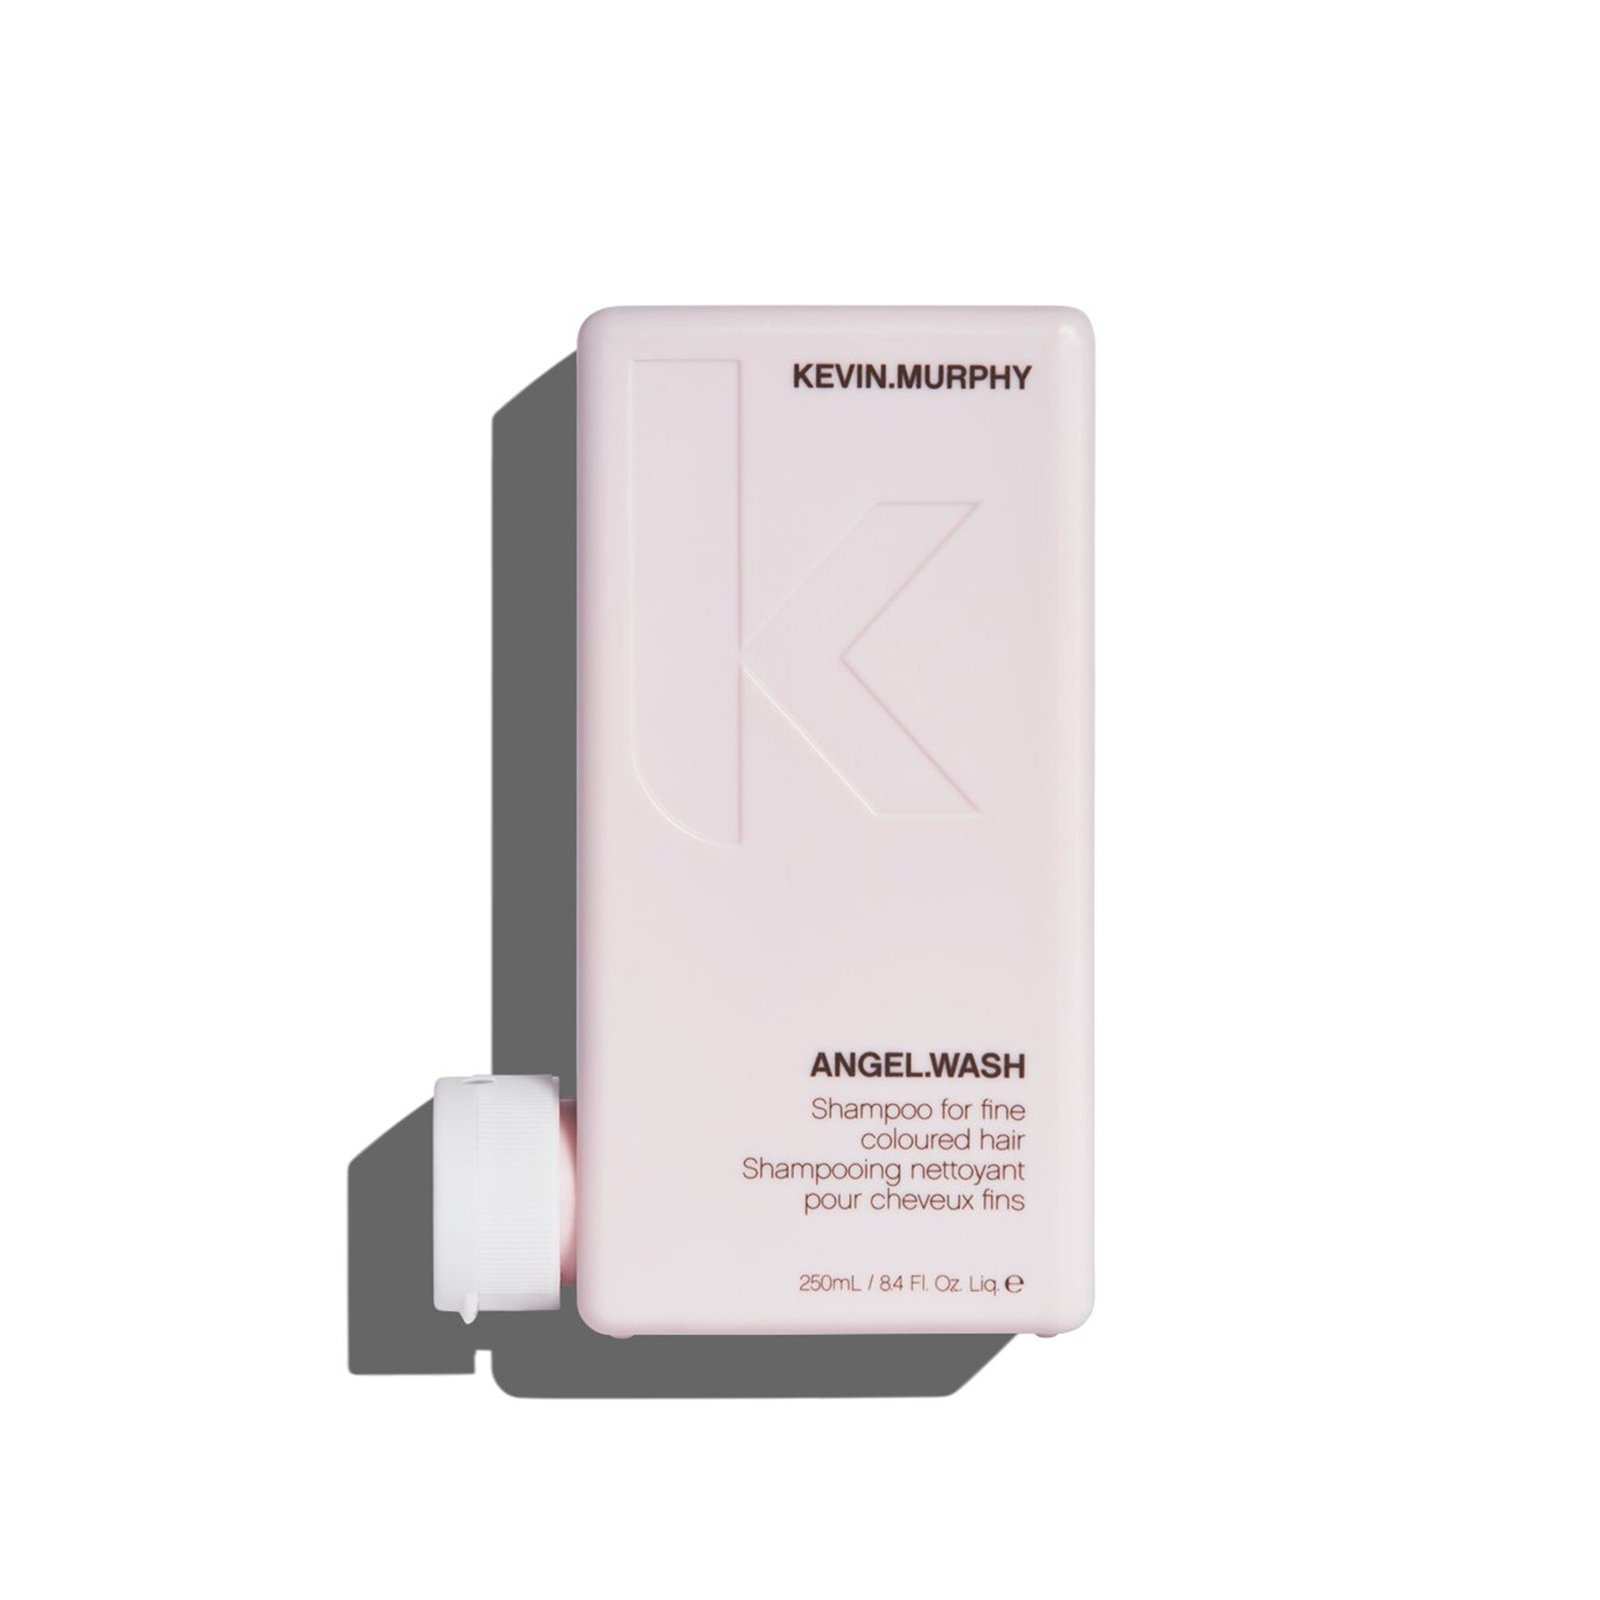 Kevin Murphy Angel Wash Shampoo 250ml (8.4 fl oz)